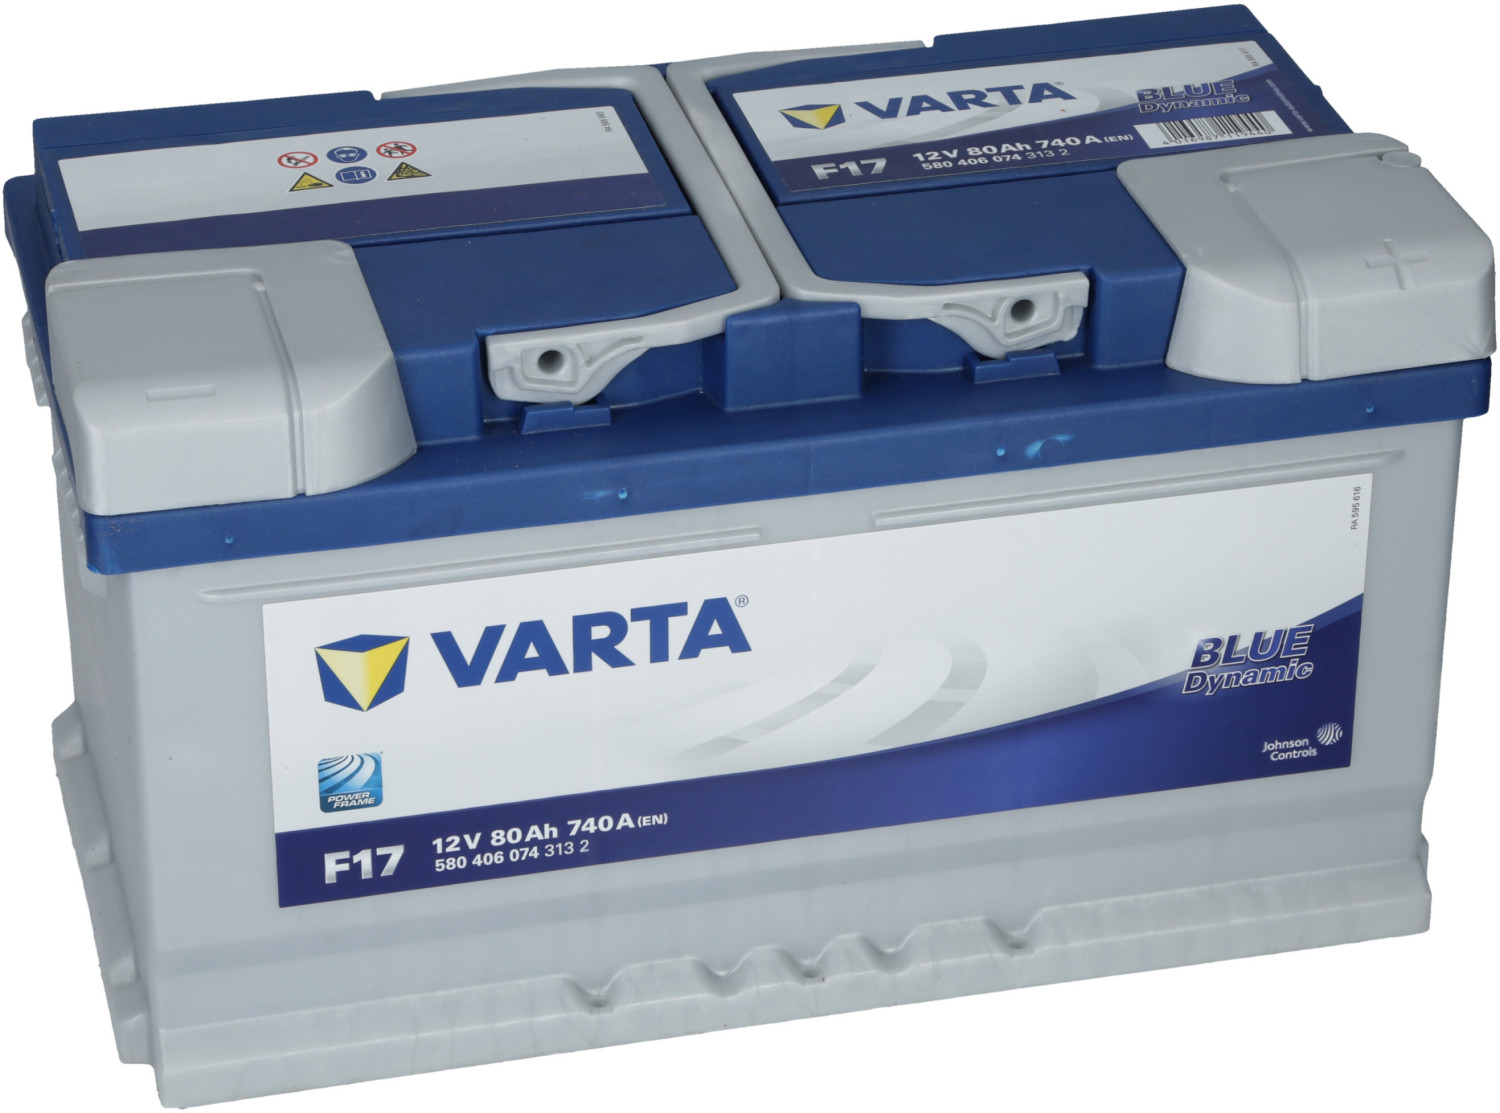 VARTA Starterbatterie Blue 80Ah 740 A F17 + Pol-Fett 10g 5804060743132  günstig online kaufen